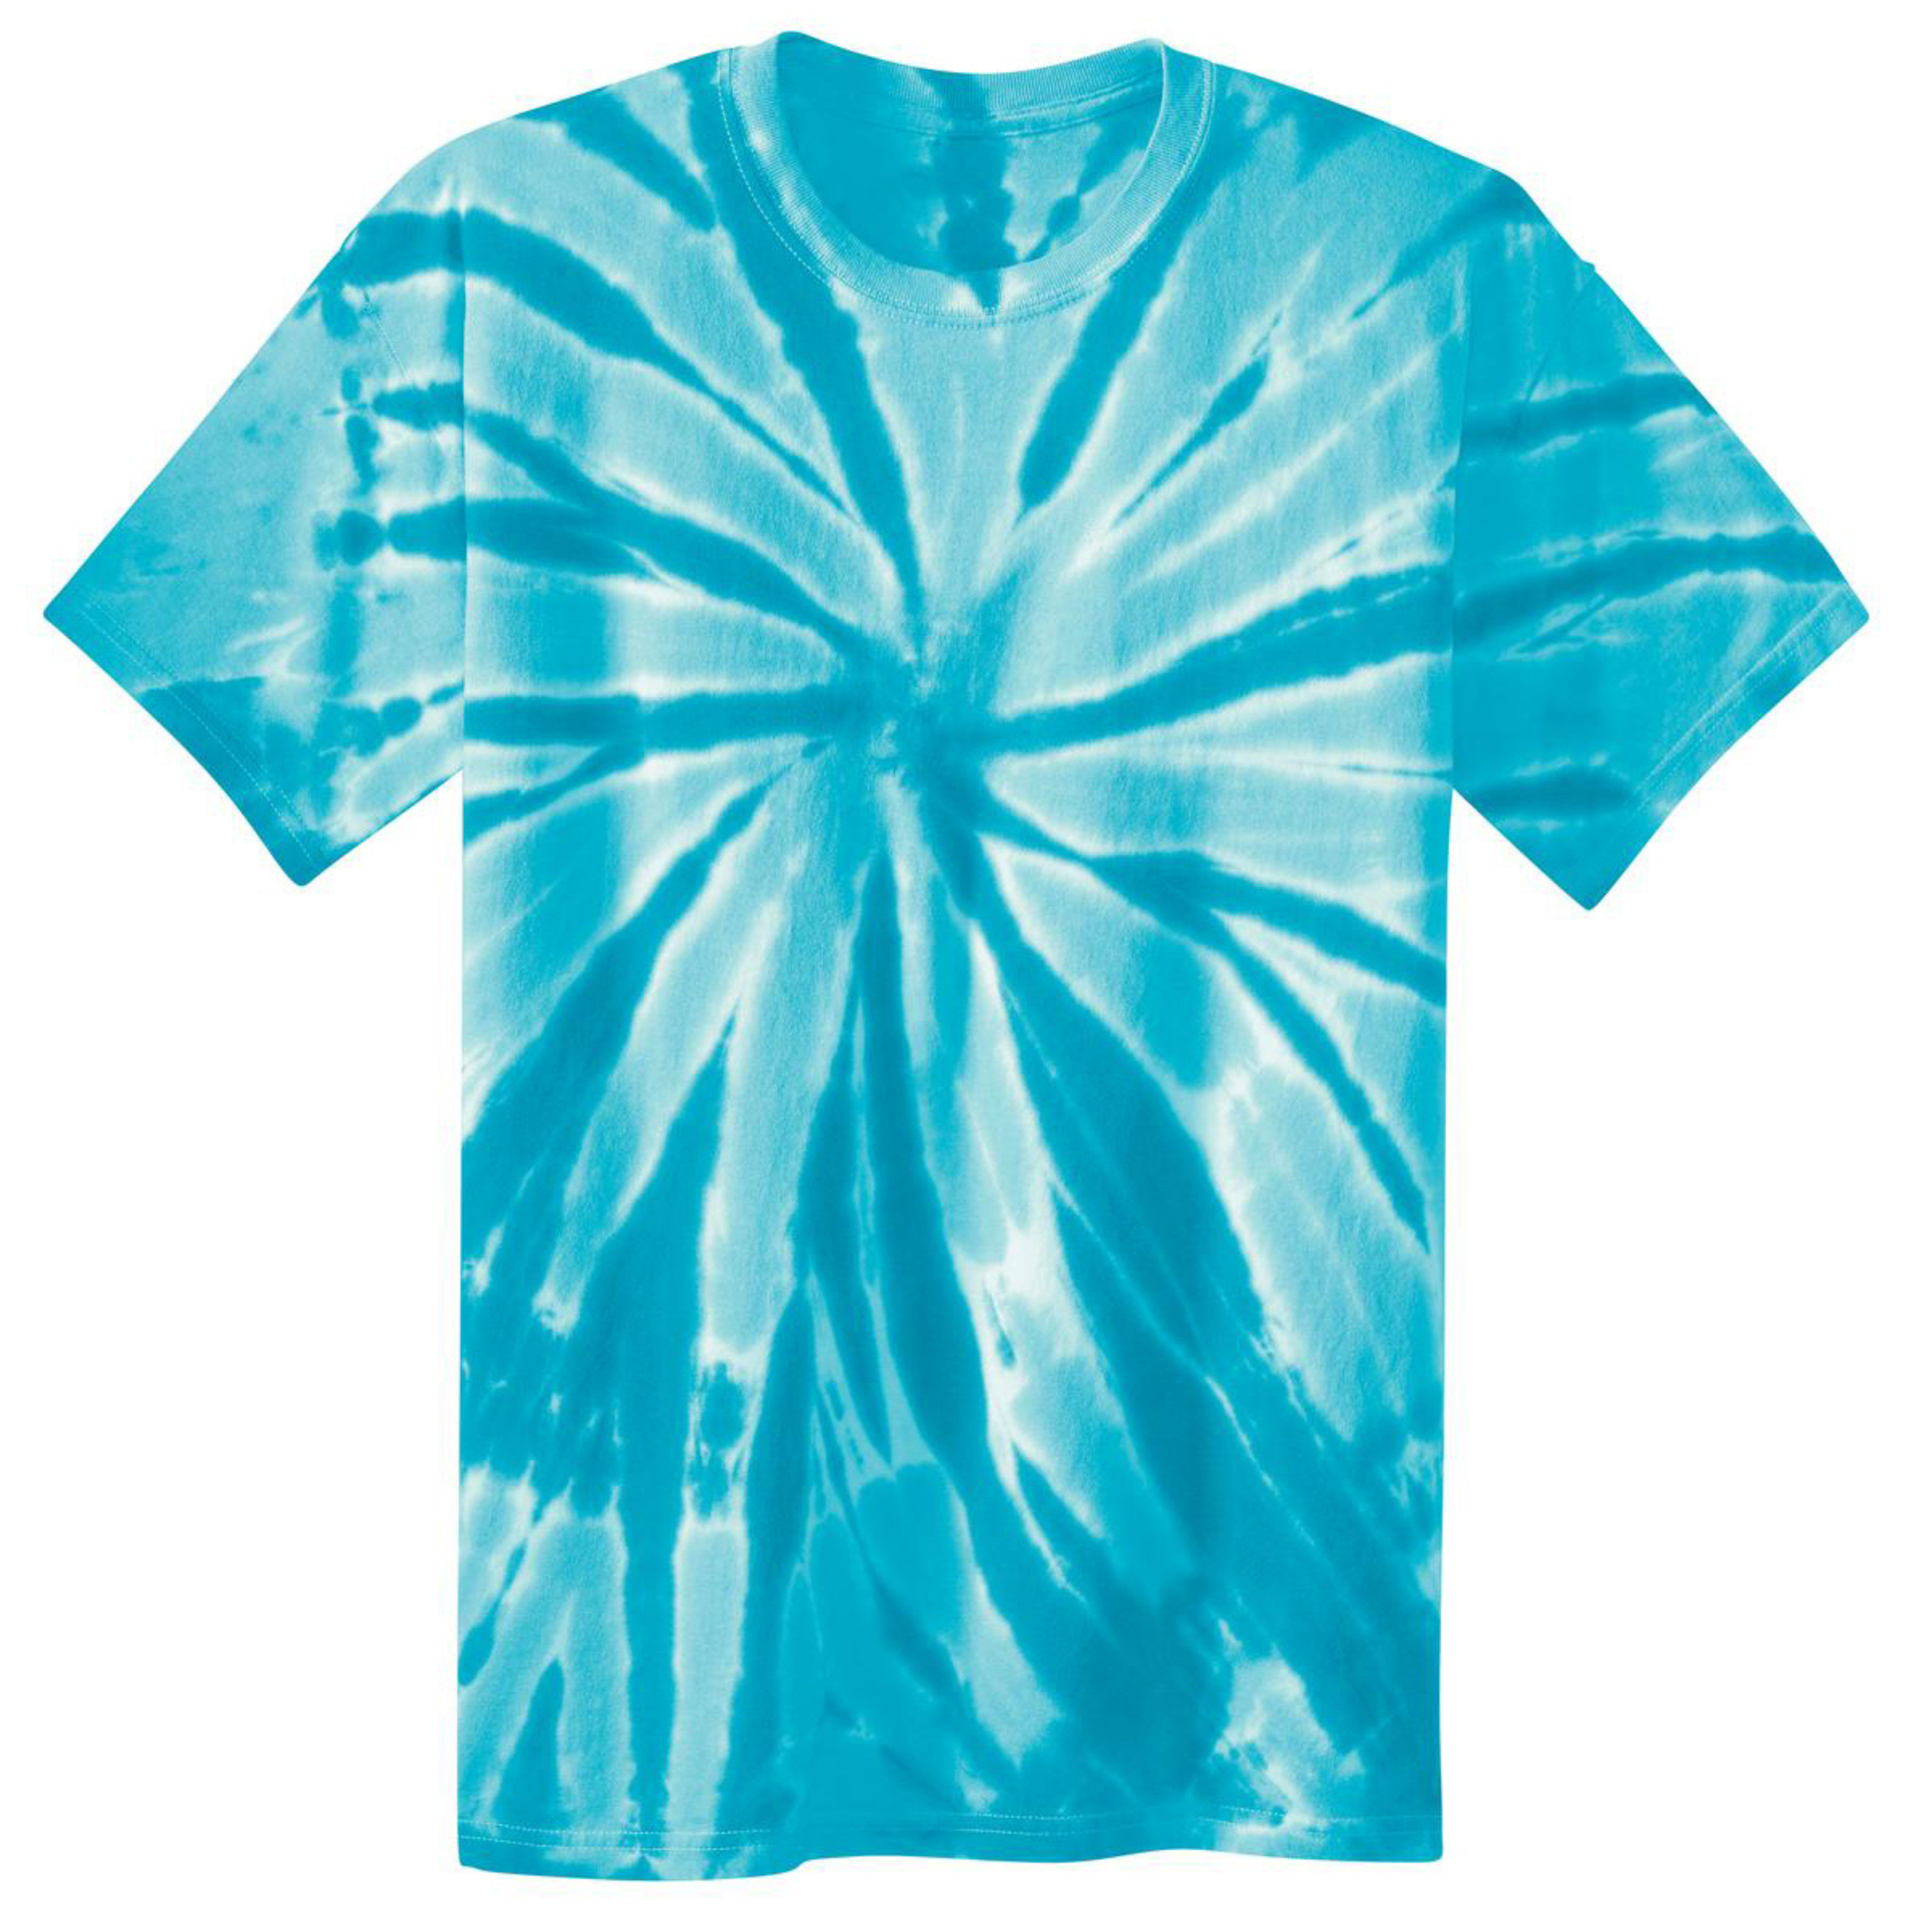 Unisex Tie-Dye Kids T-shirt